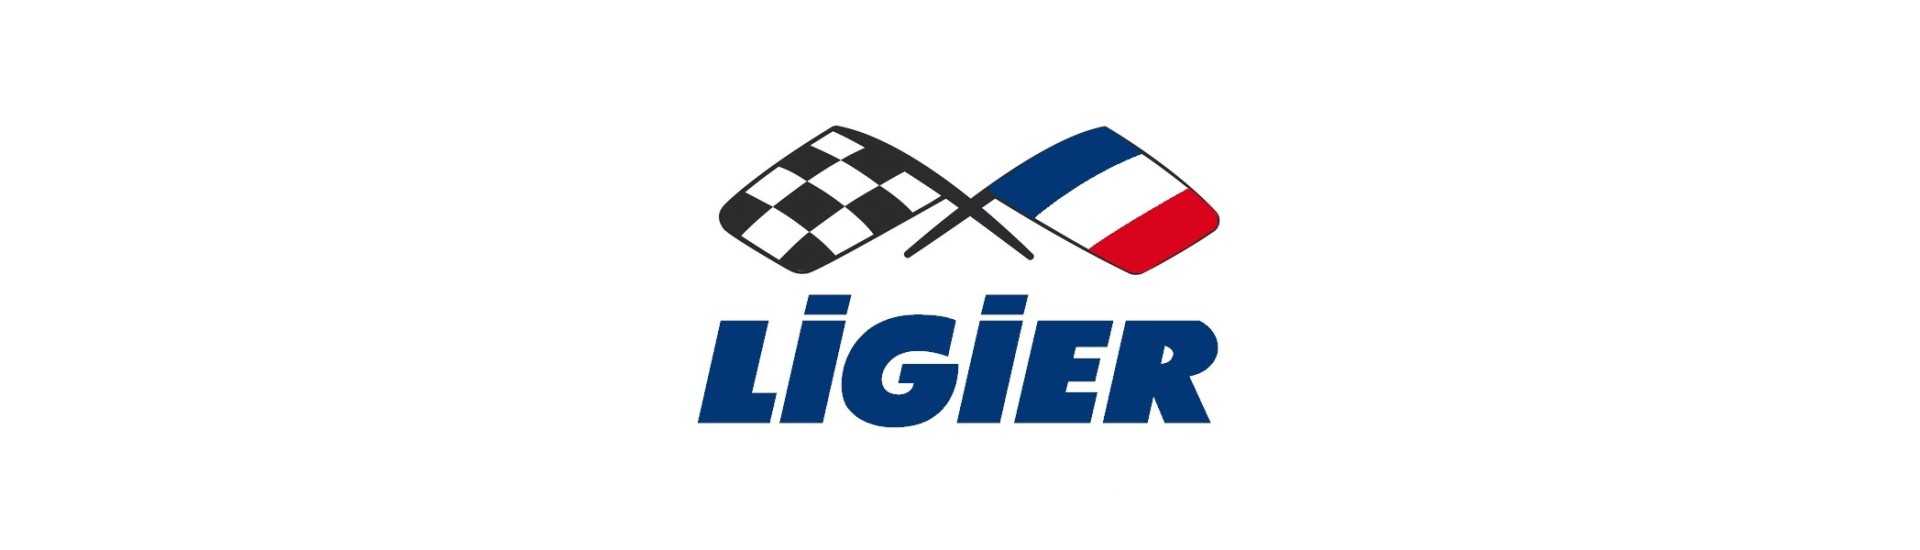 Bästa prishastighetslåda för bil utan tillstånd Ligier